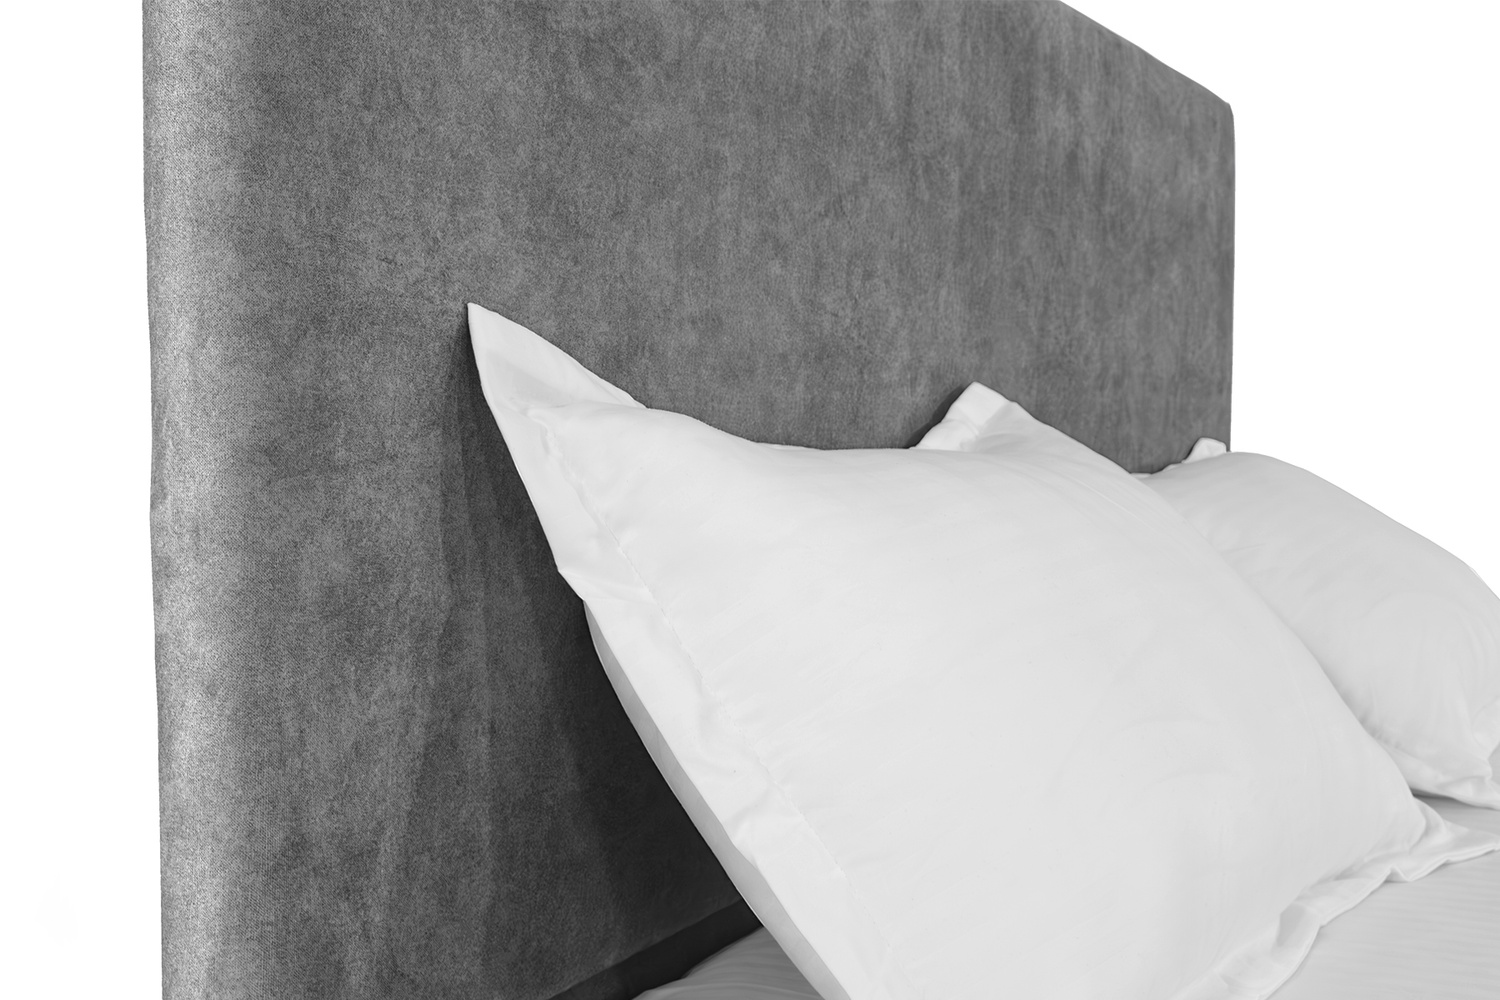 Ліжко Лаванда 140х200 (Світло-сірий, ламелі, без підйомного механізму) IMI lvnd140x200ssb фото